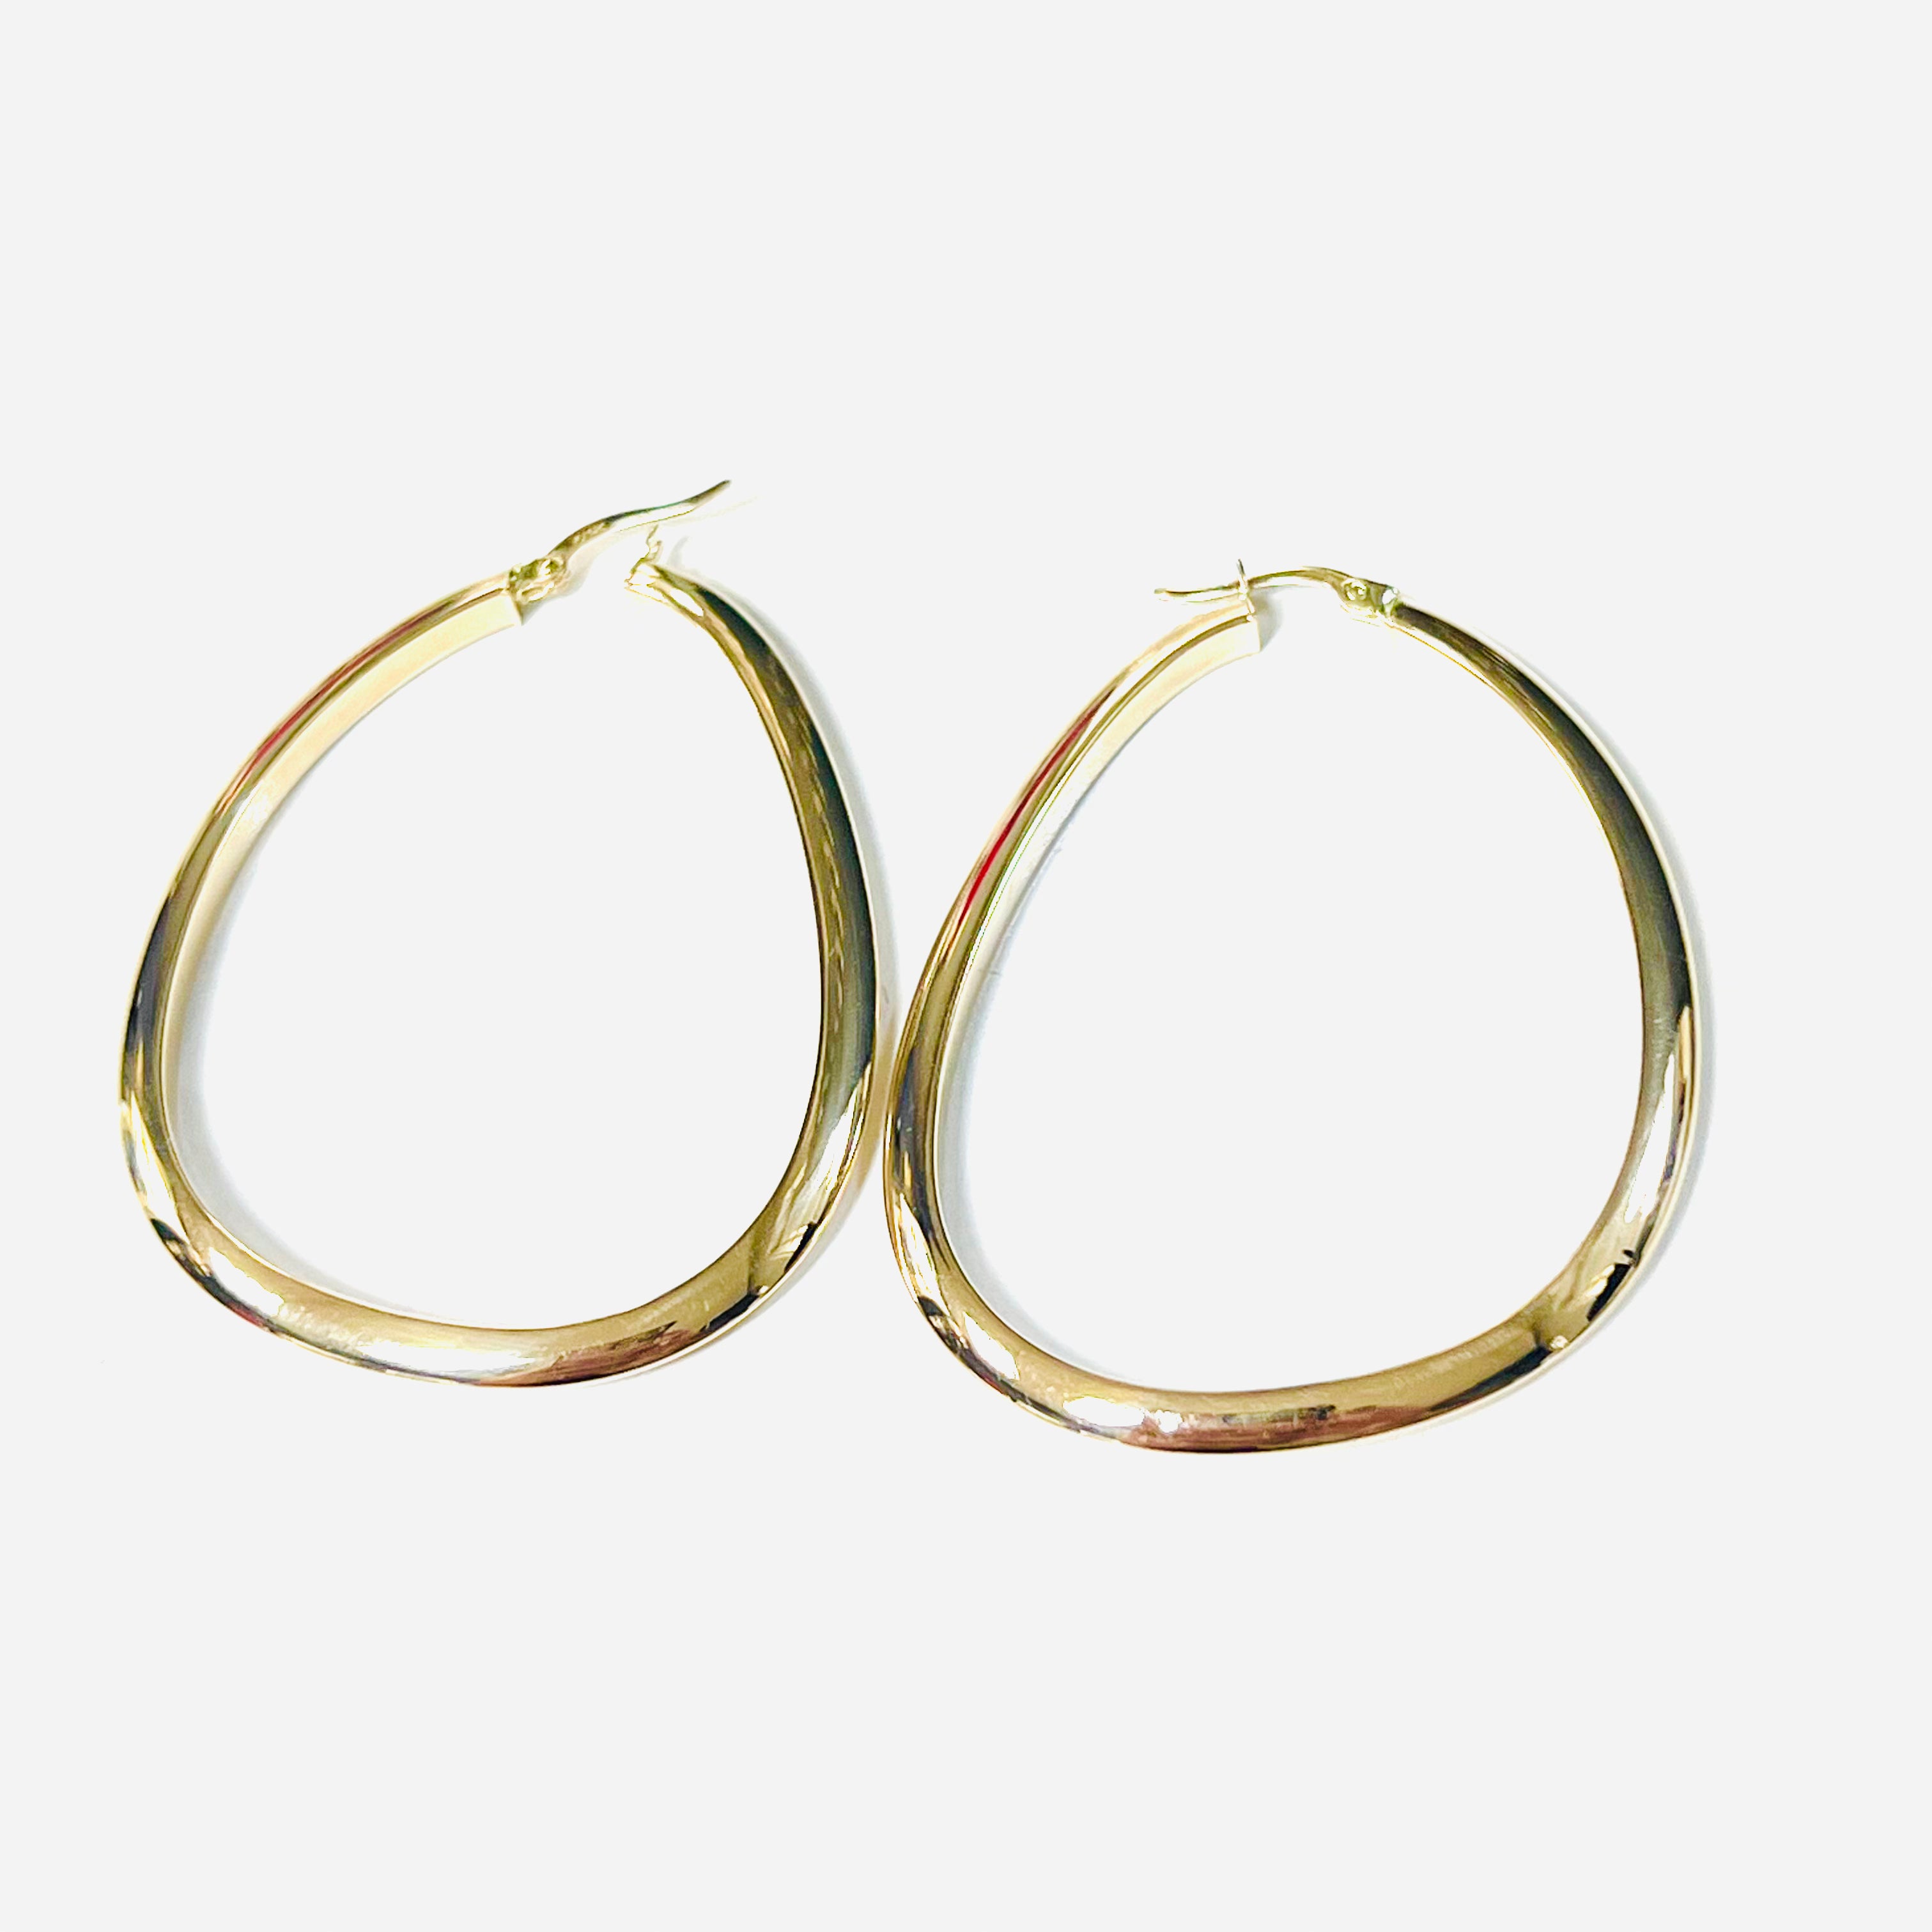 14K Gold Hoops Earrings 2.1”